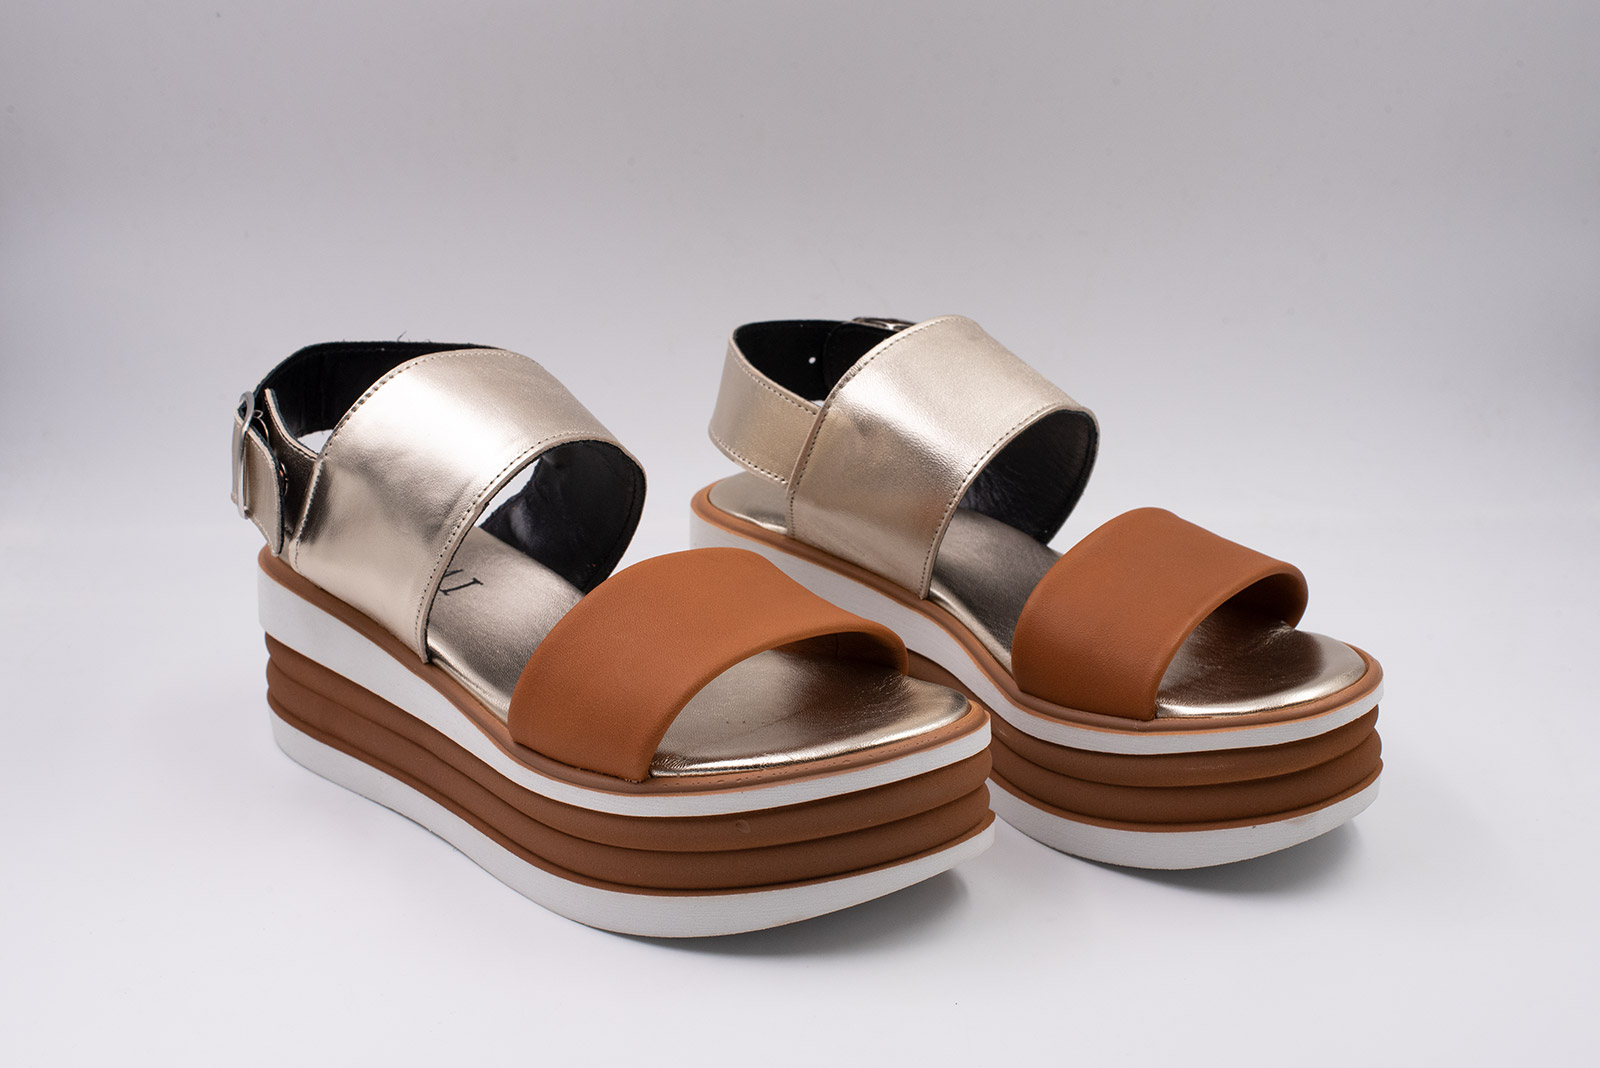 Sandalo donna - pelle colore Cuoio+lam.platino Fondo bicolor cuoio/bianco